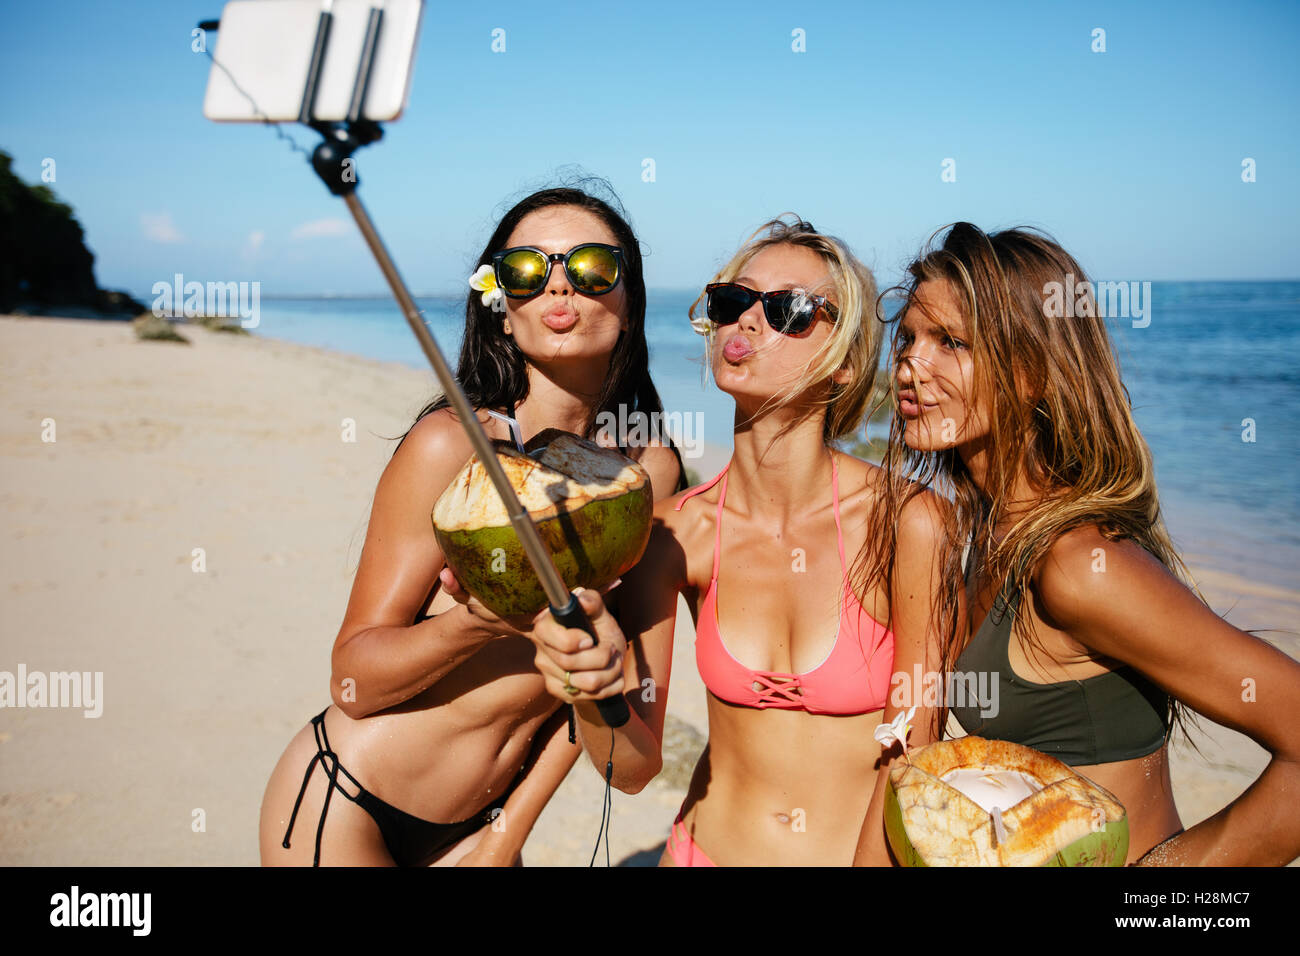 Trois jeunes femmes en maillot de bain sur la plage profitant de vacances et taking self portrait stick selfies. Groupe de femmes avec des amis Banque D'Images